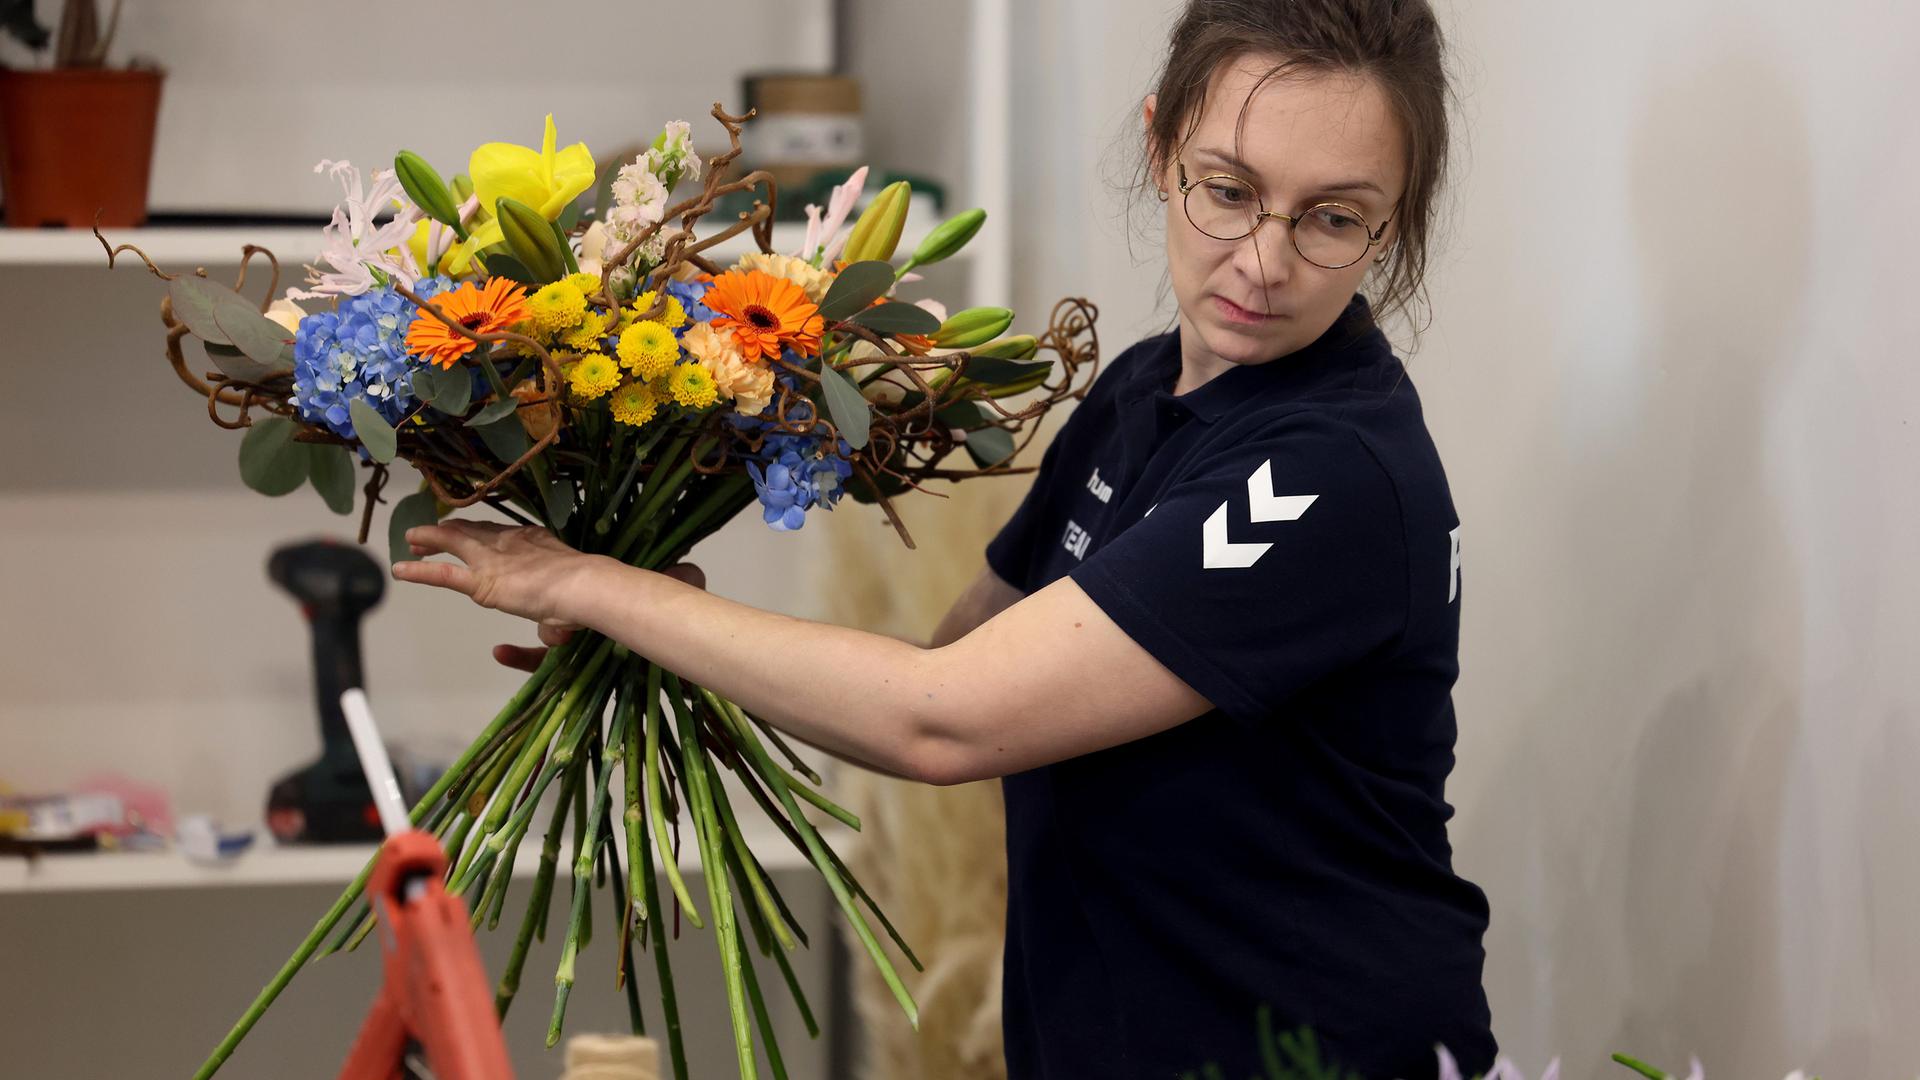 Avec Célia Pignoux, Sylvaine Agator est l'autre candidate française au concours d'art floral. Elle a déjà participé aux Internationaux Abilympics en 2016.